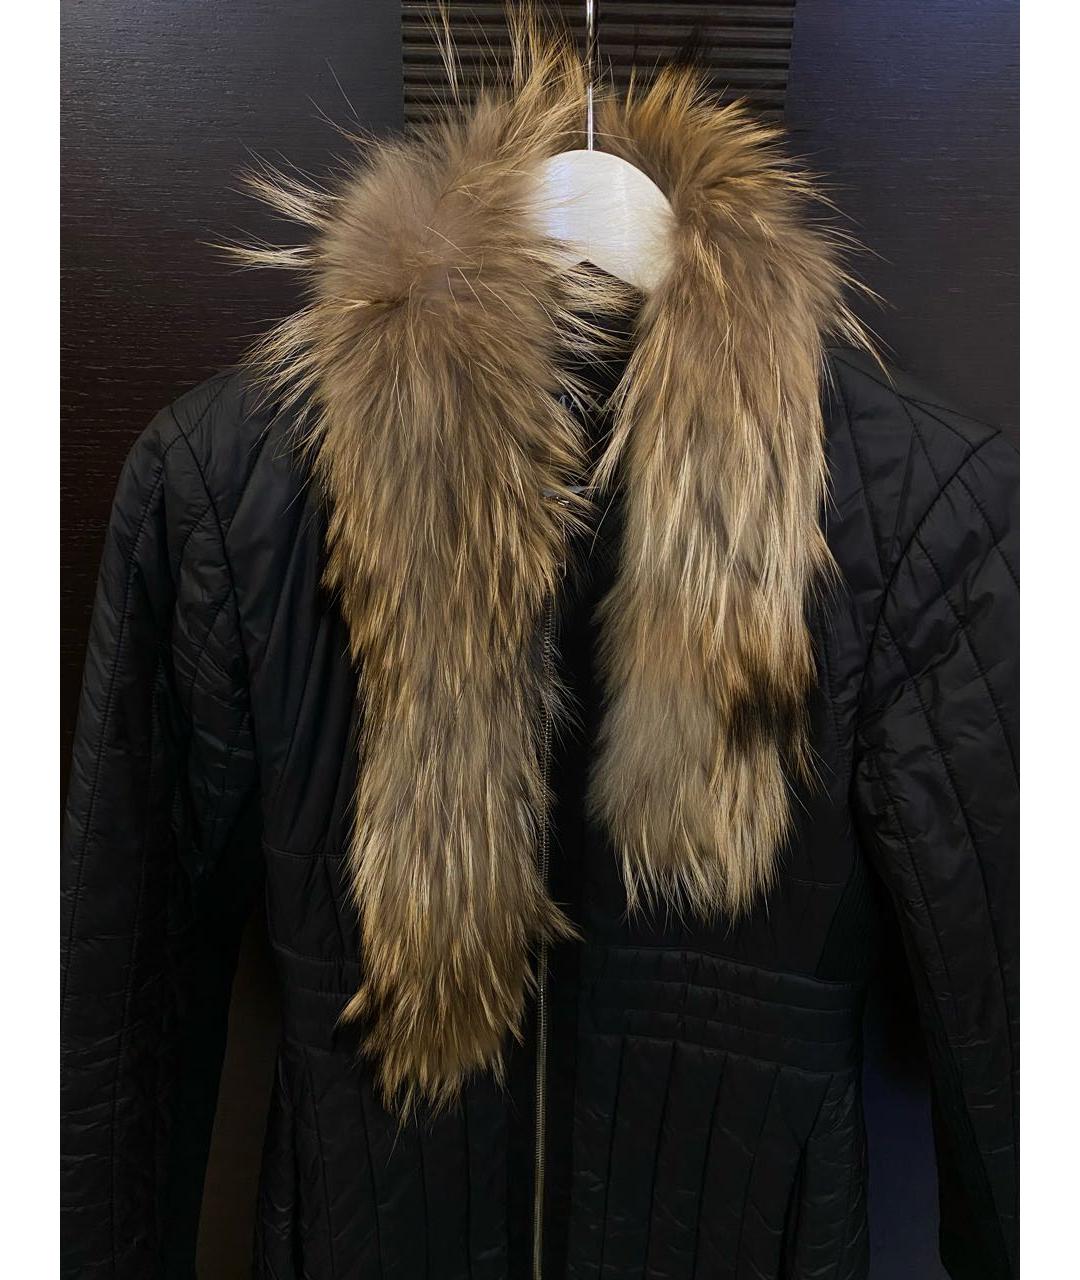 MAX&CO Черное полиамидовое пальто, фото 4